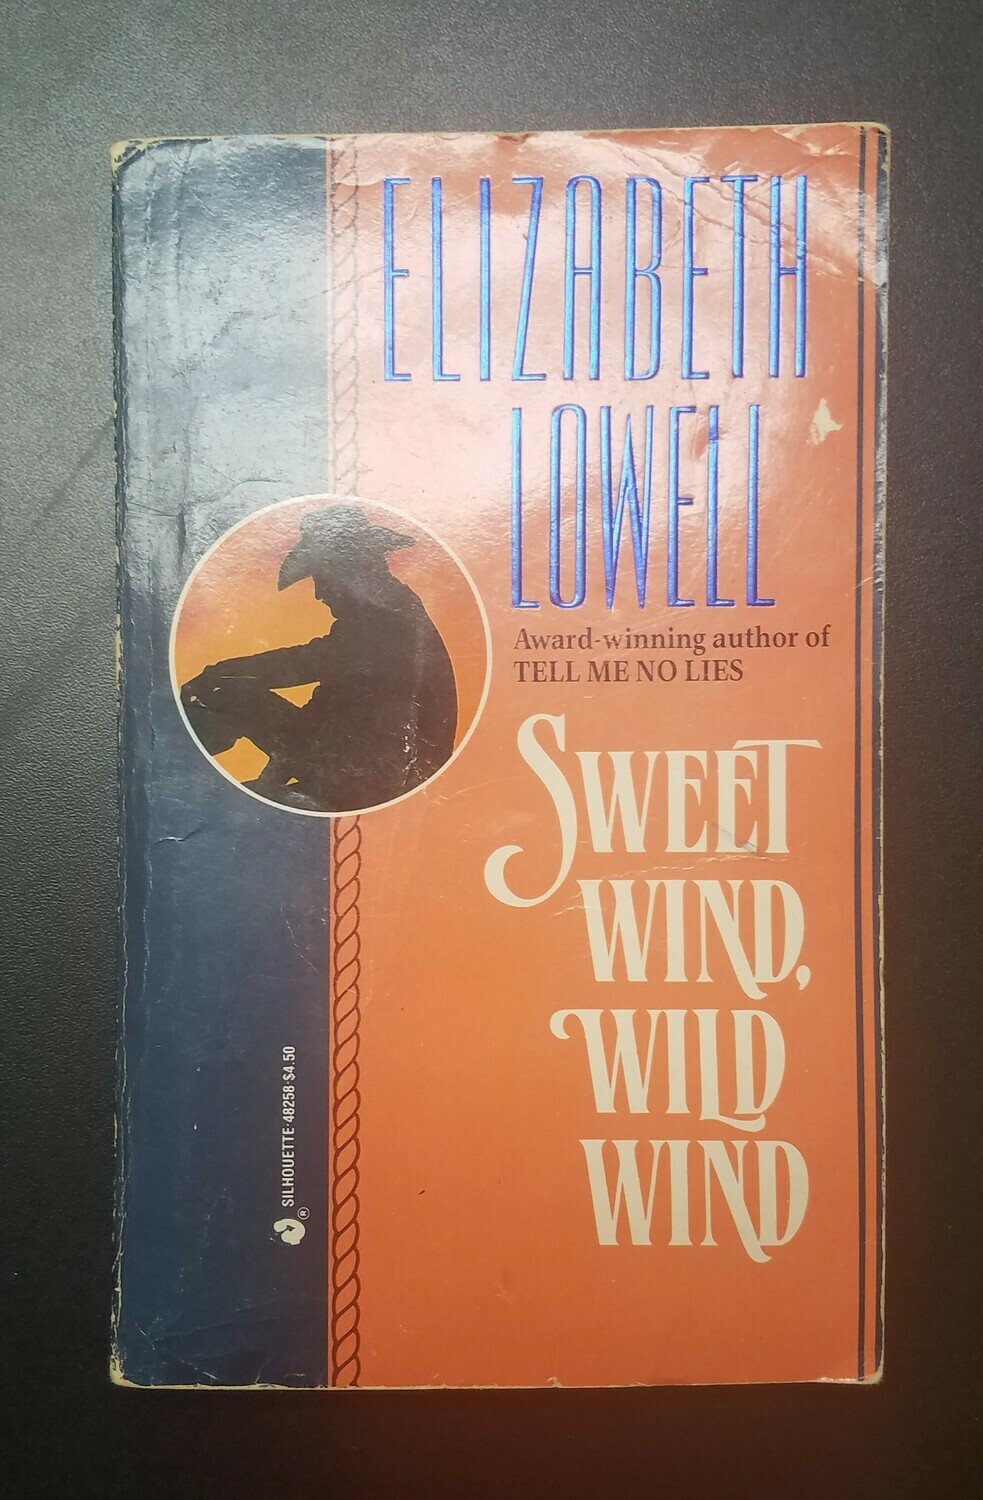 Sweet Wind, Wild Wind by Elizabeth Lowell